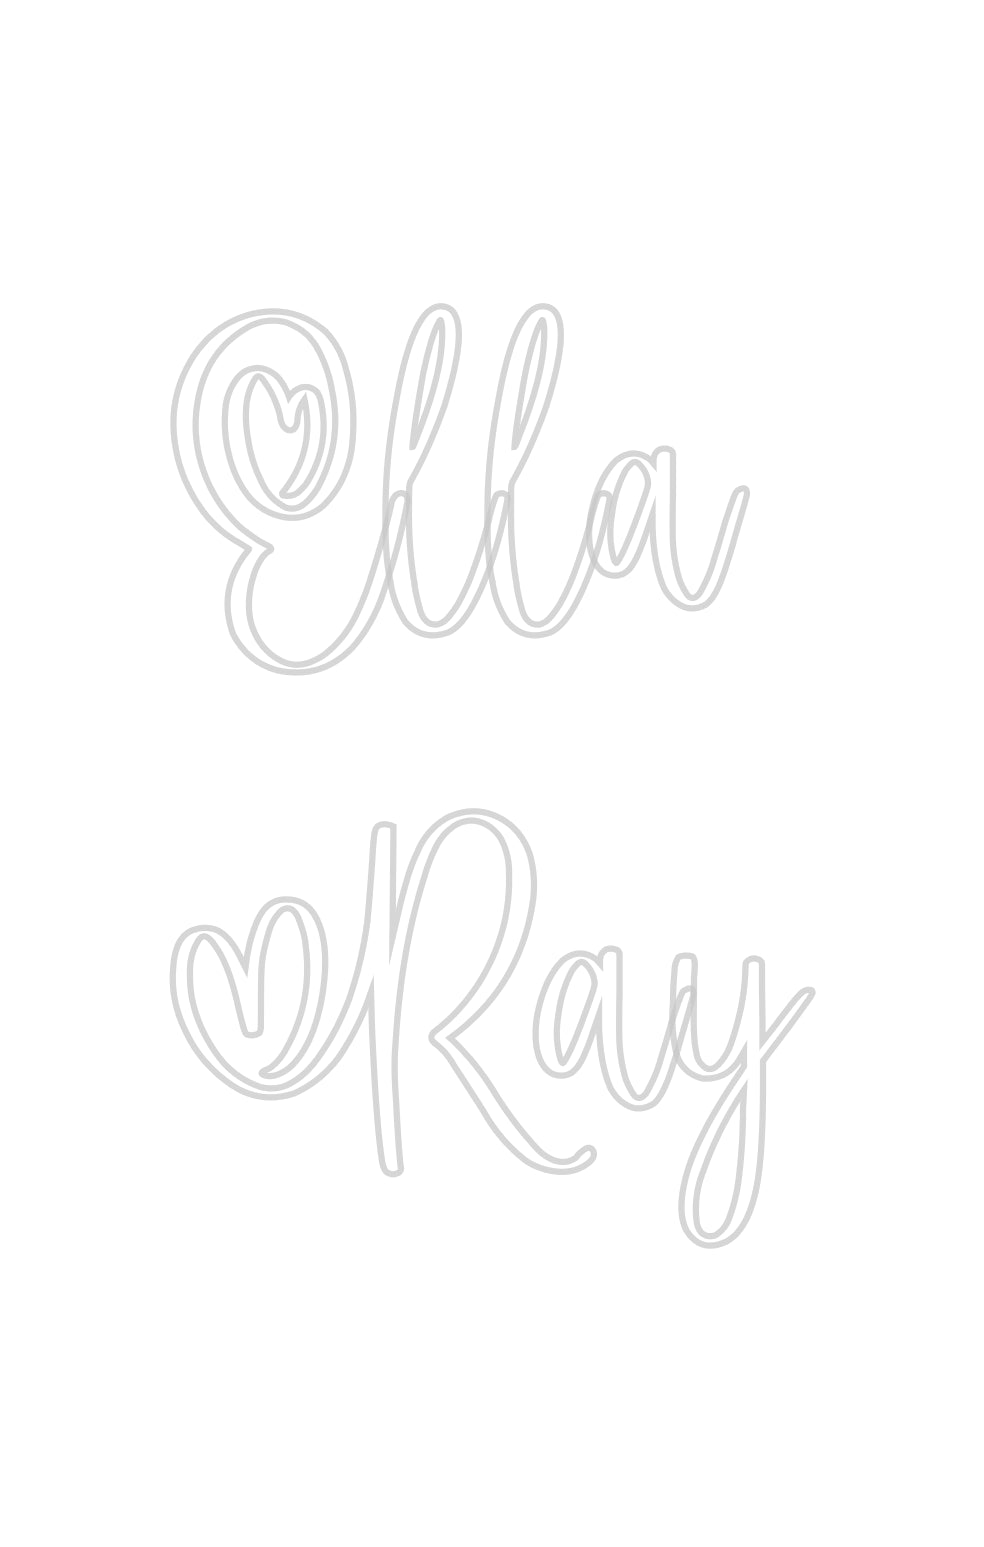 Custom Neon: Ella
Ray